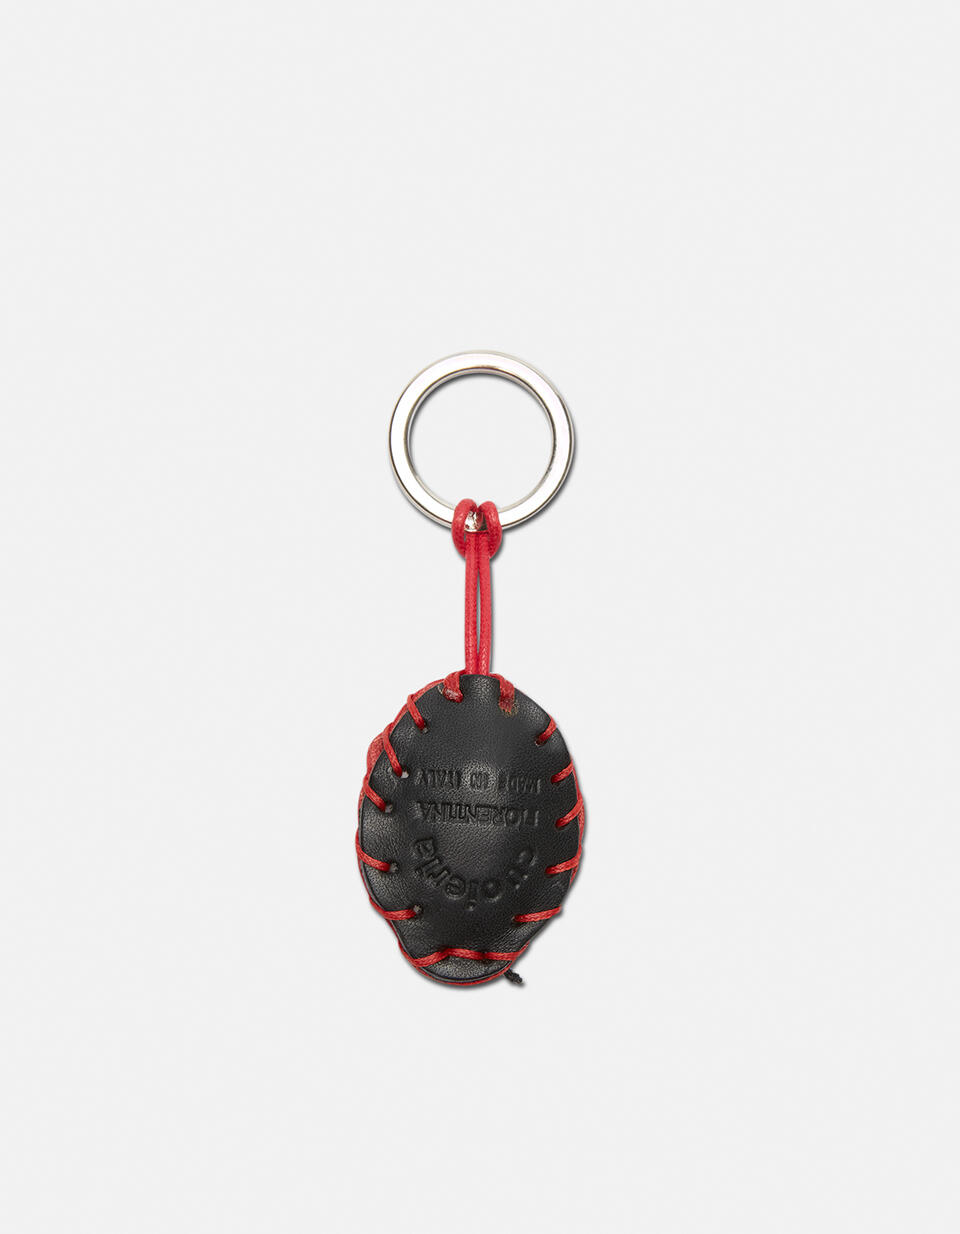 Ladybug  Leather keychain - Key holders - Women's Accessories | Accessories ROSSO - Key holders - Women's Accessories | AccessoriesCuoieria Fiorentina